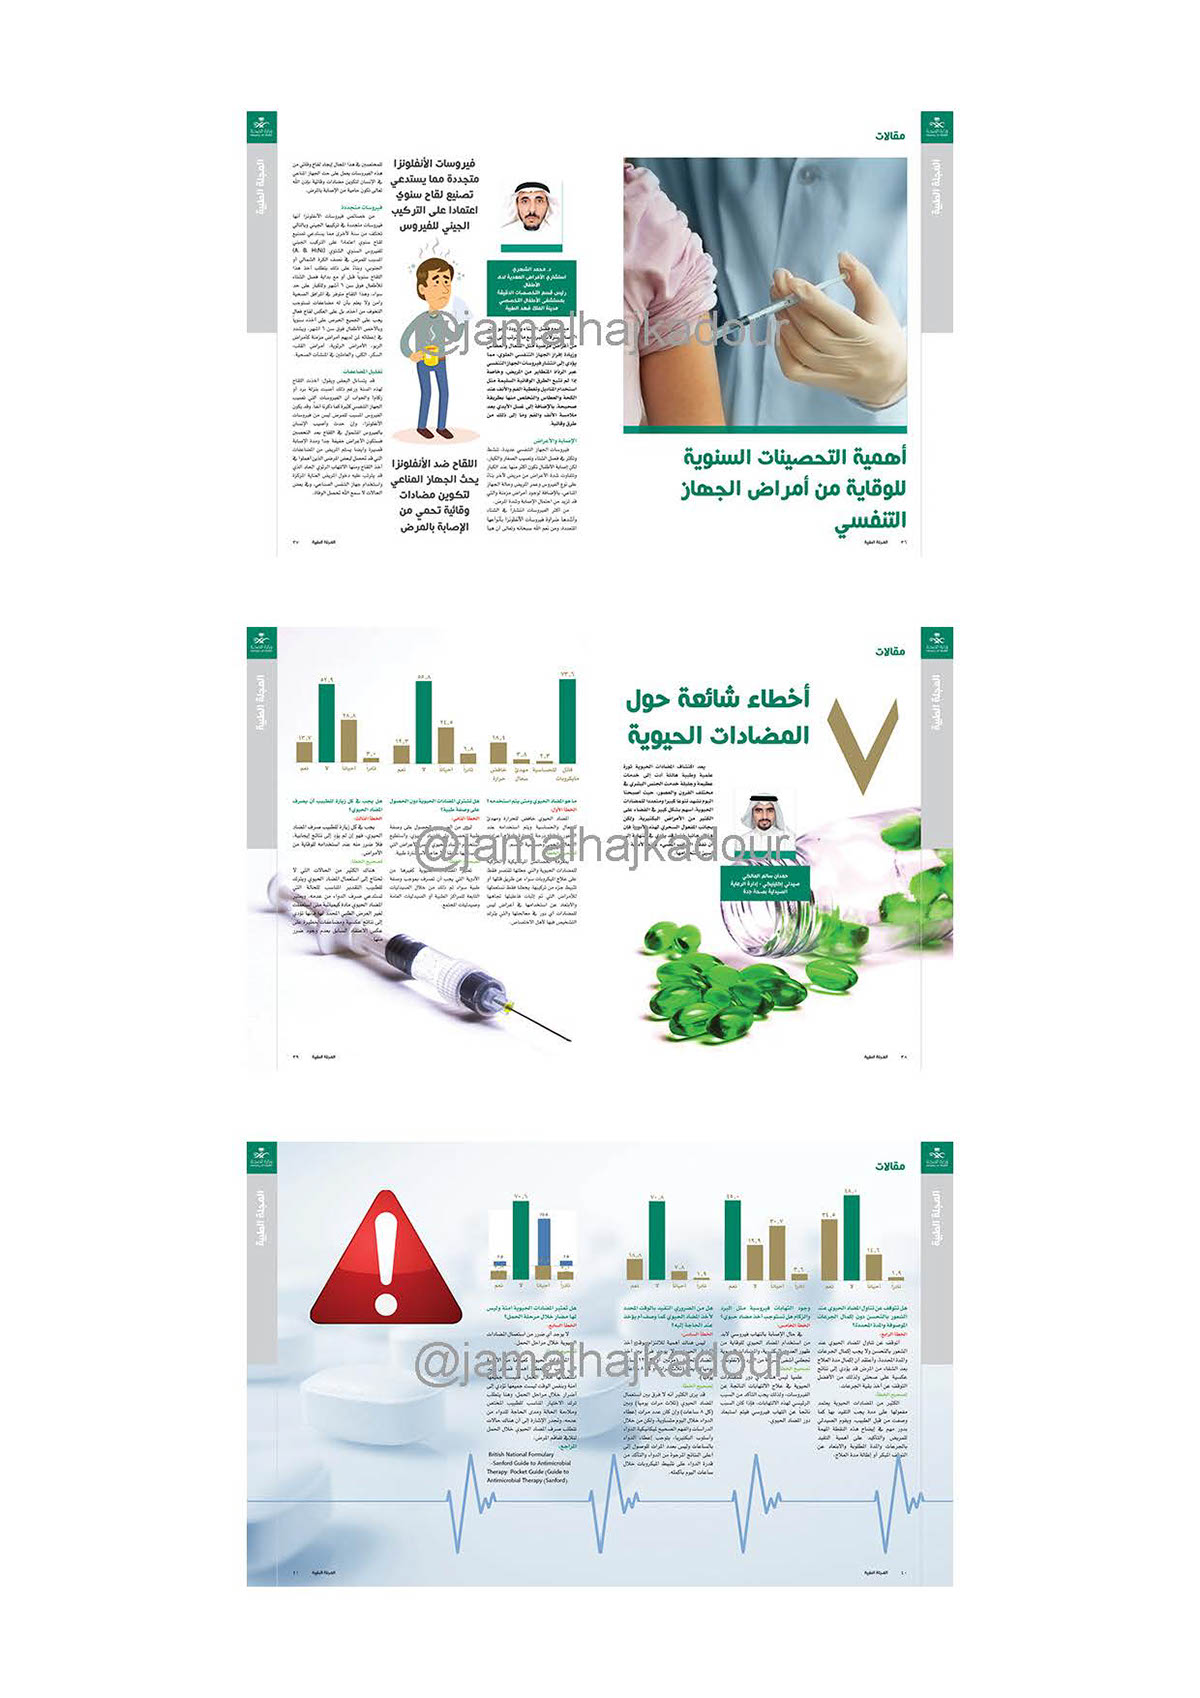 المجلة الطبية السعودية صحة طب Saudi arabic Health magazine journal